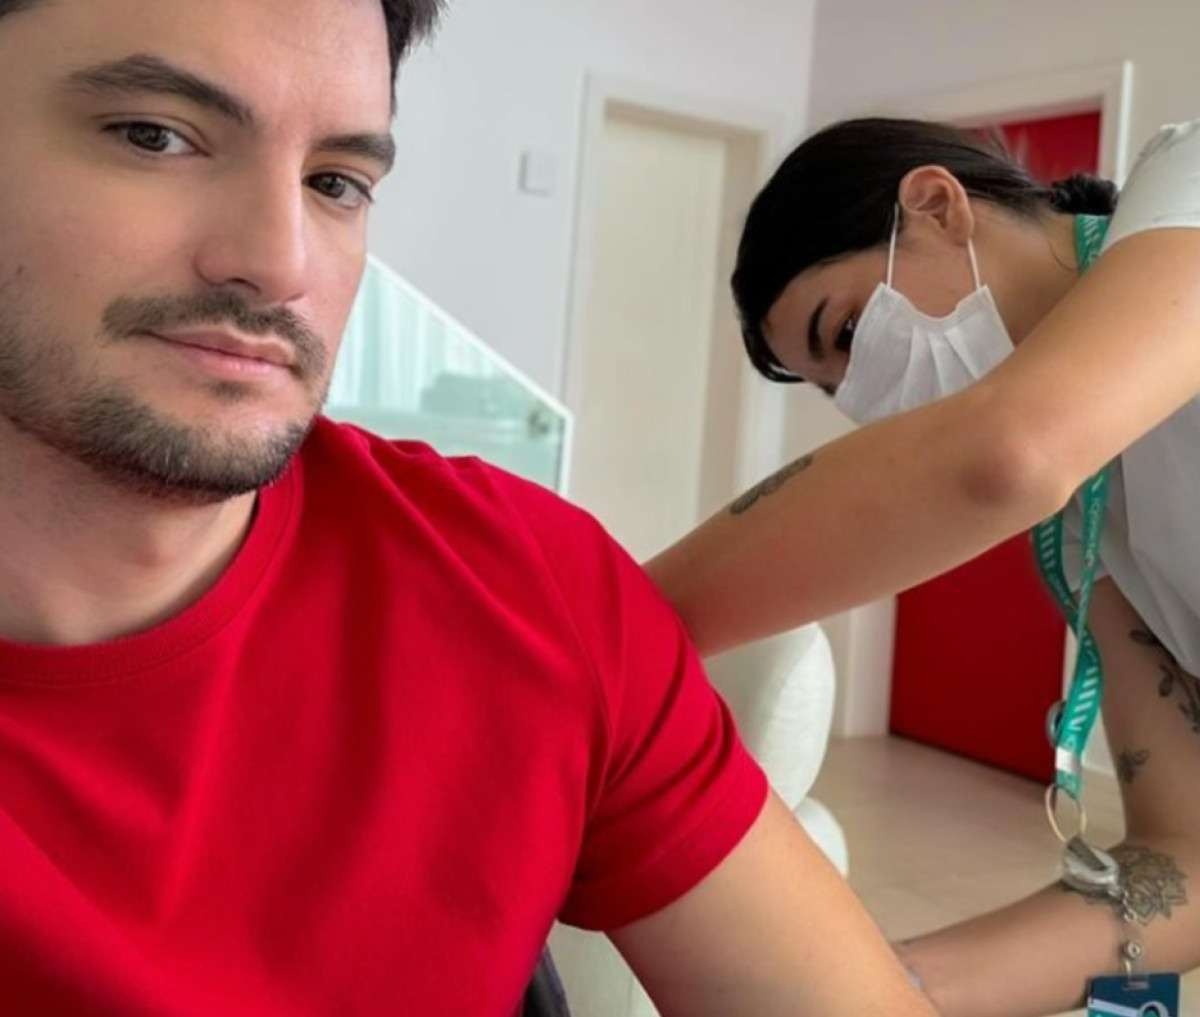 Felipe Neto toma vacina contra dengue e convoca pais: 'Vacinem seus filhos'